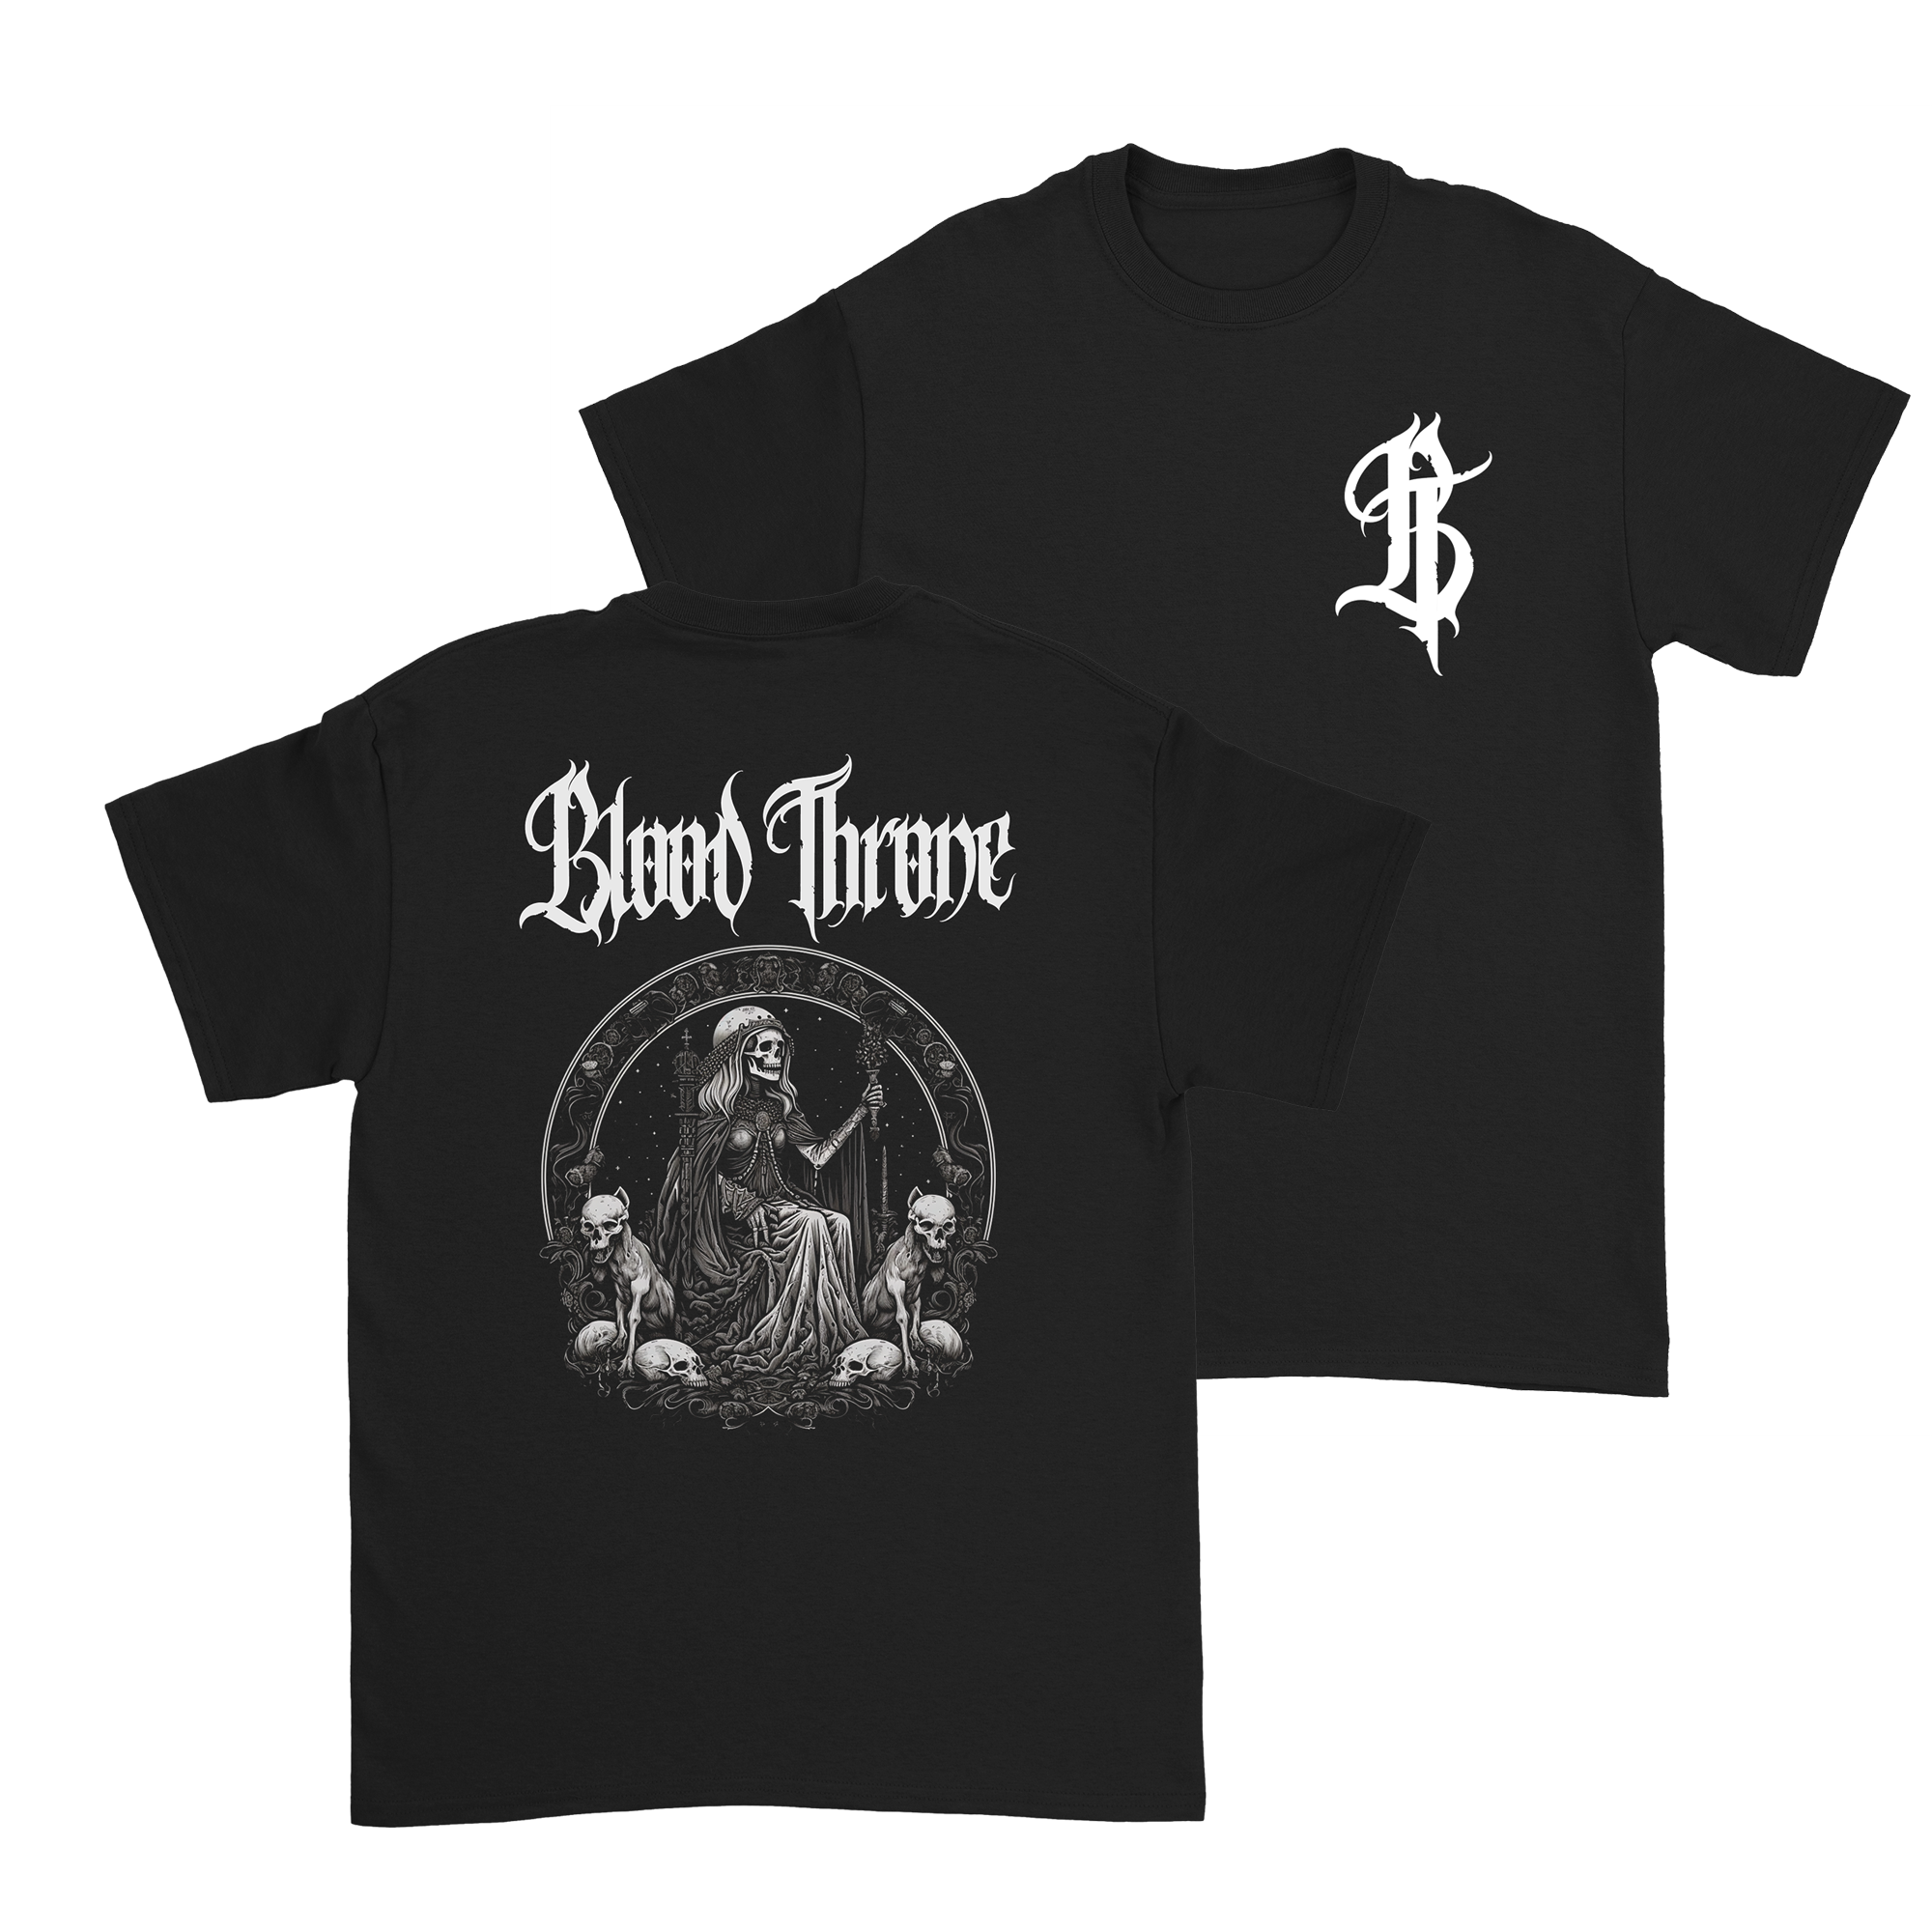 Blood Throne - Skeleton Woman T-Shirt